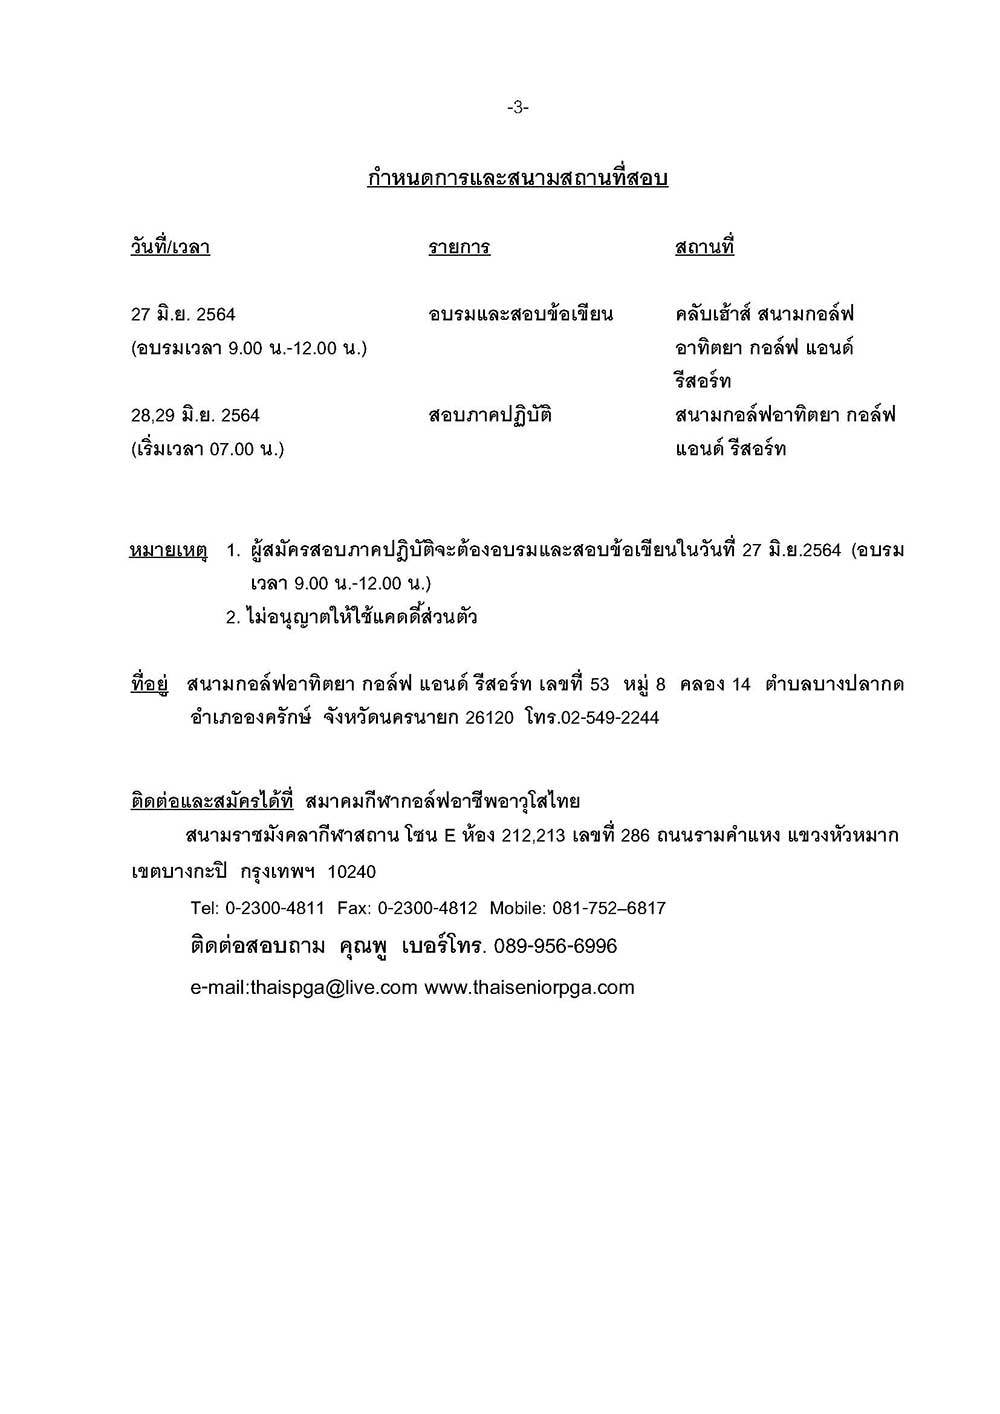 หนงสอสอบเปนภาษาไทย อาทตยา Page 3